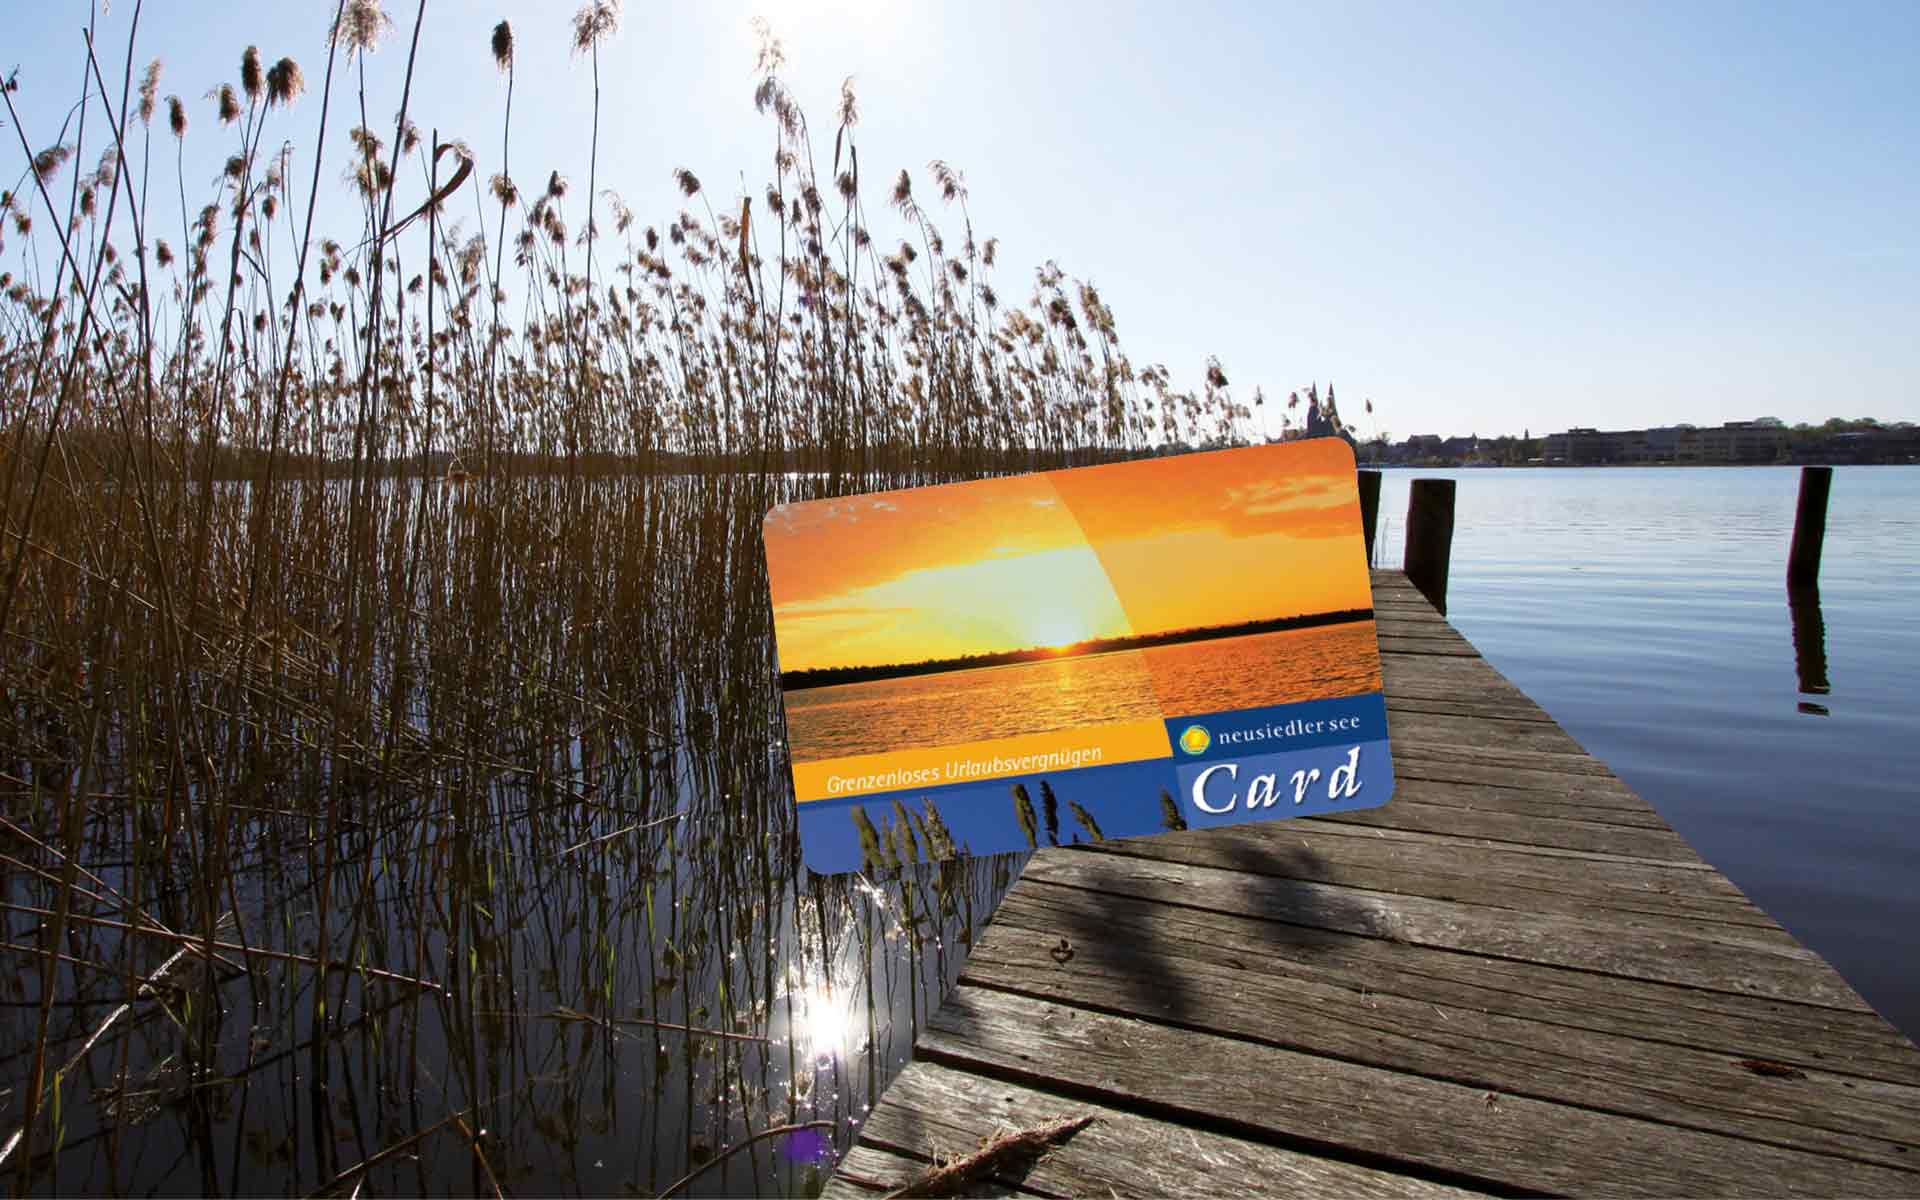 Neusiedler See Card auf Steg im Schilf am Neusiedler See